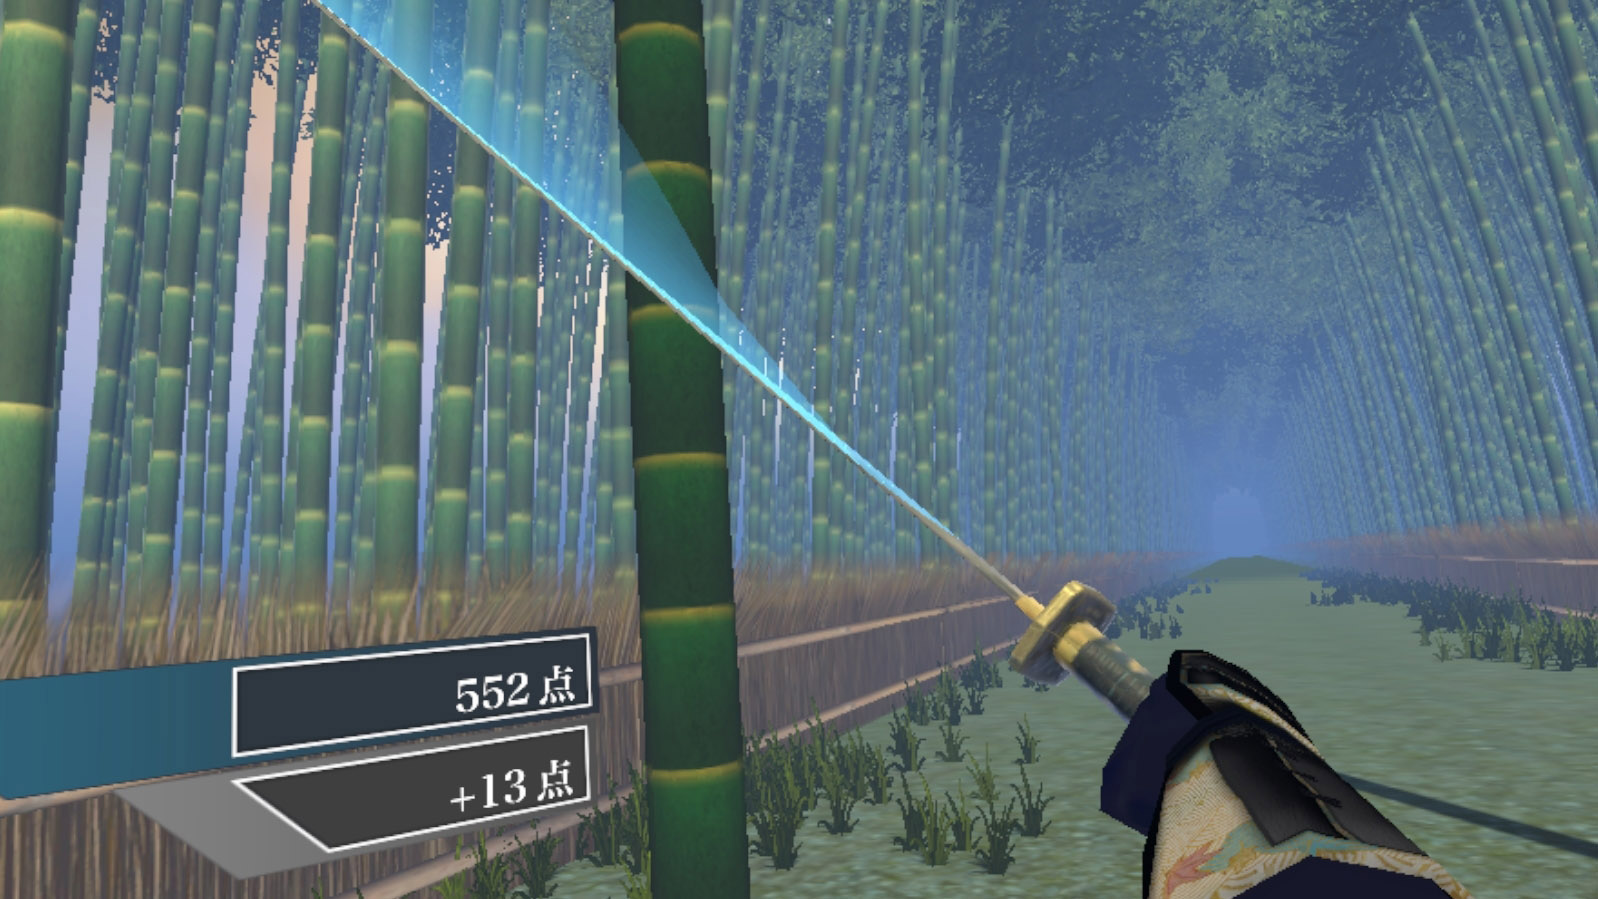 Vr sword. Sword of Samurai игра. ВР игры с мечами. Ps4 для VR С мечами. VR мечи для Beat saber.